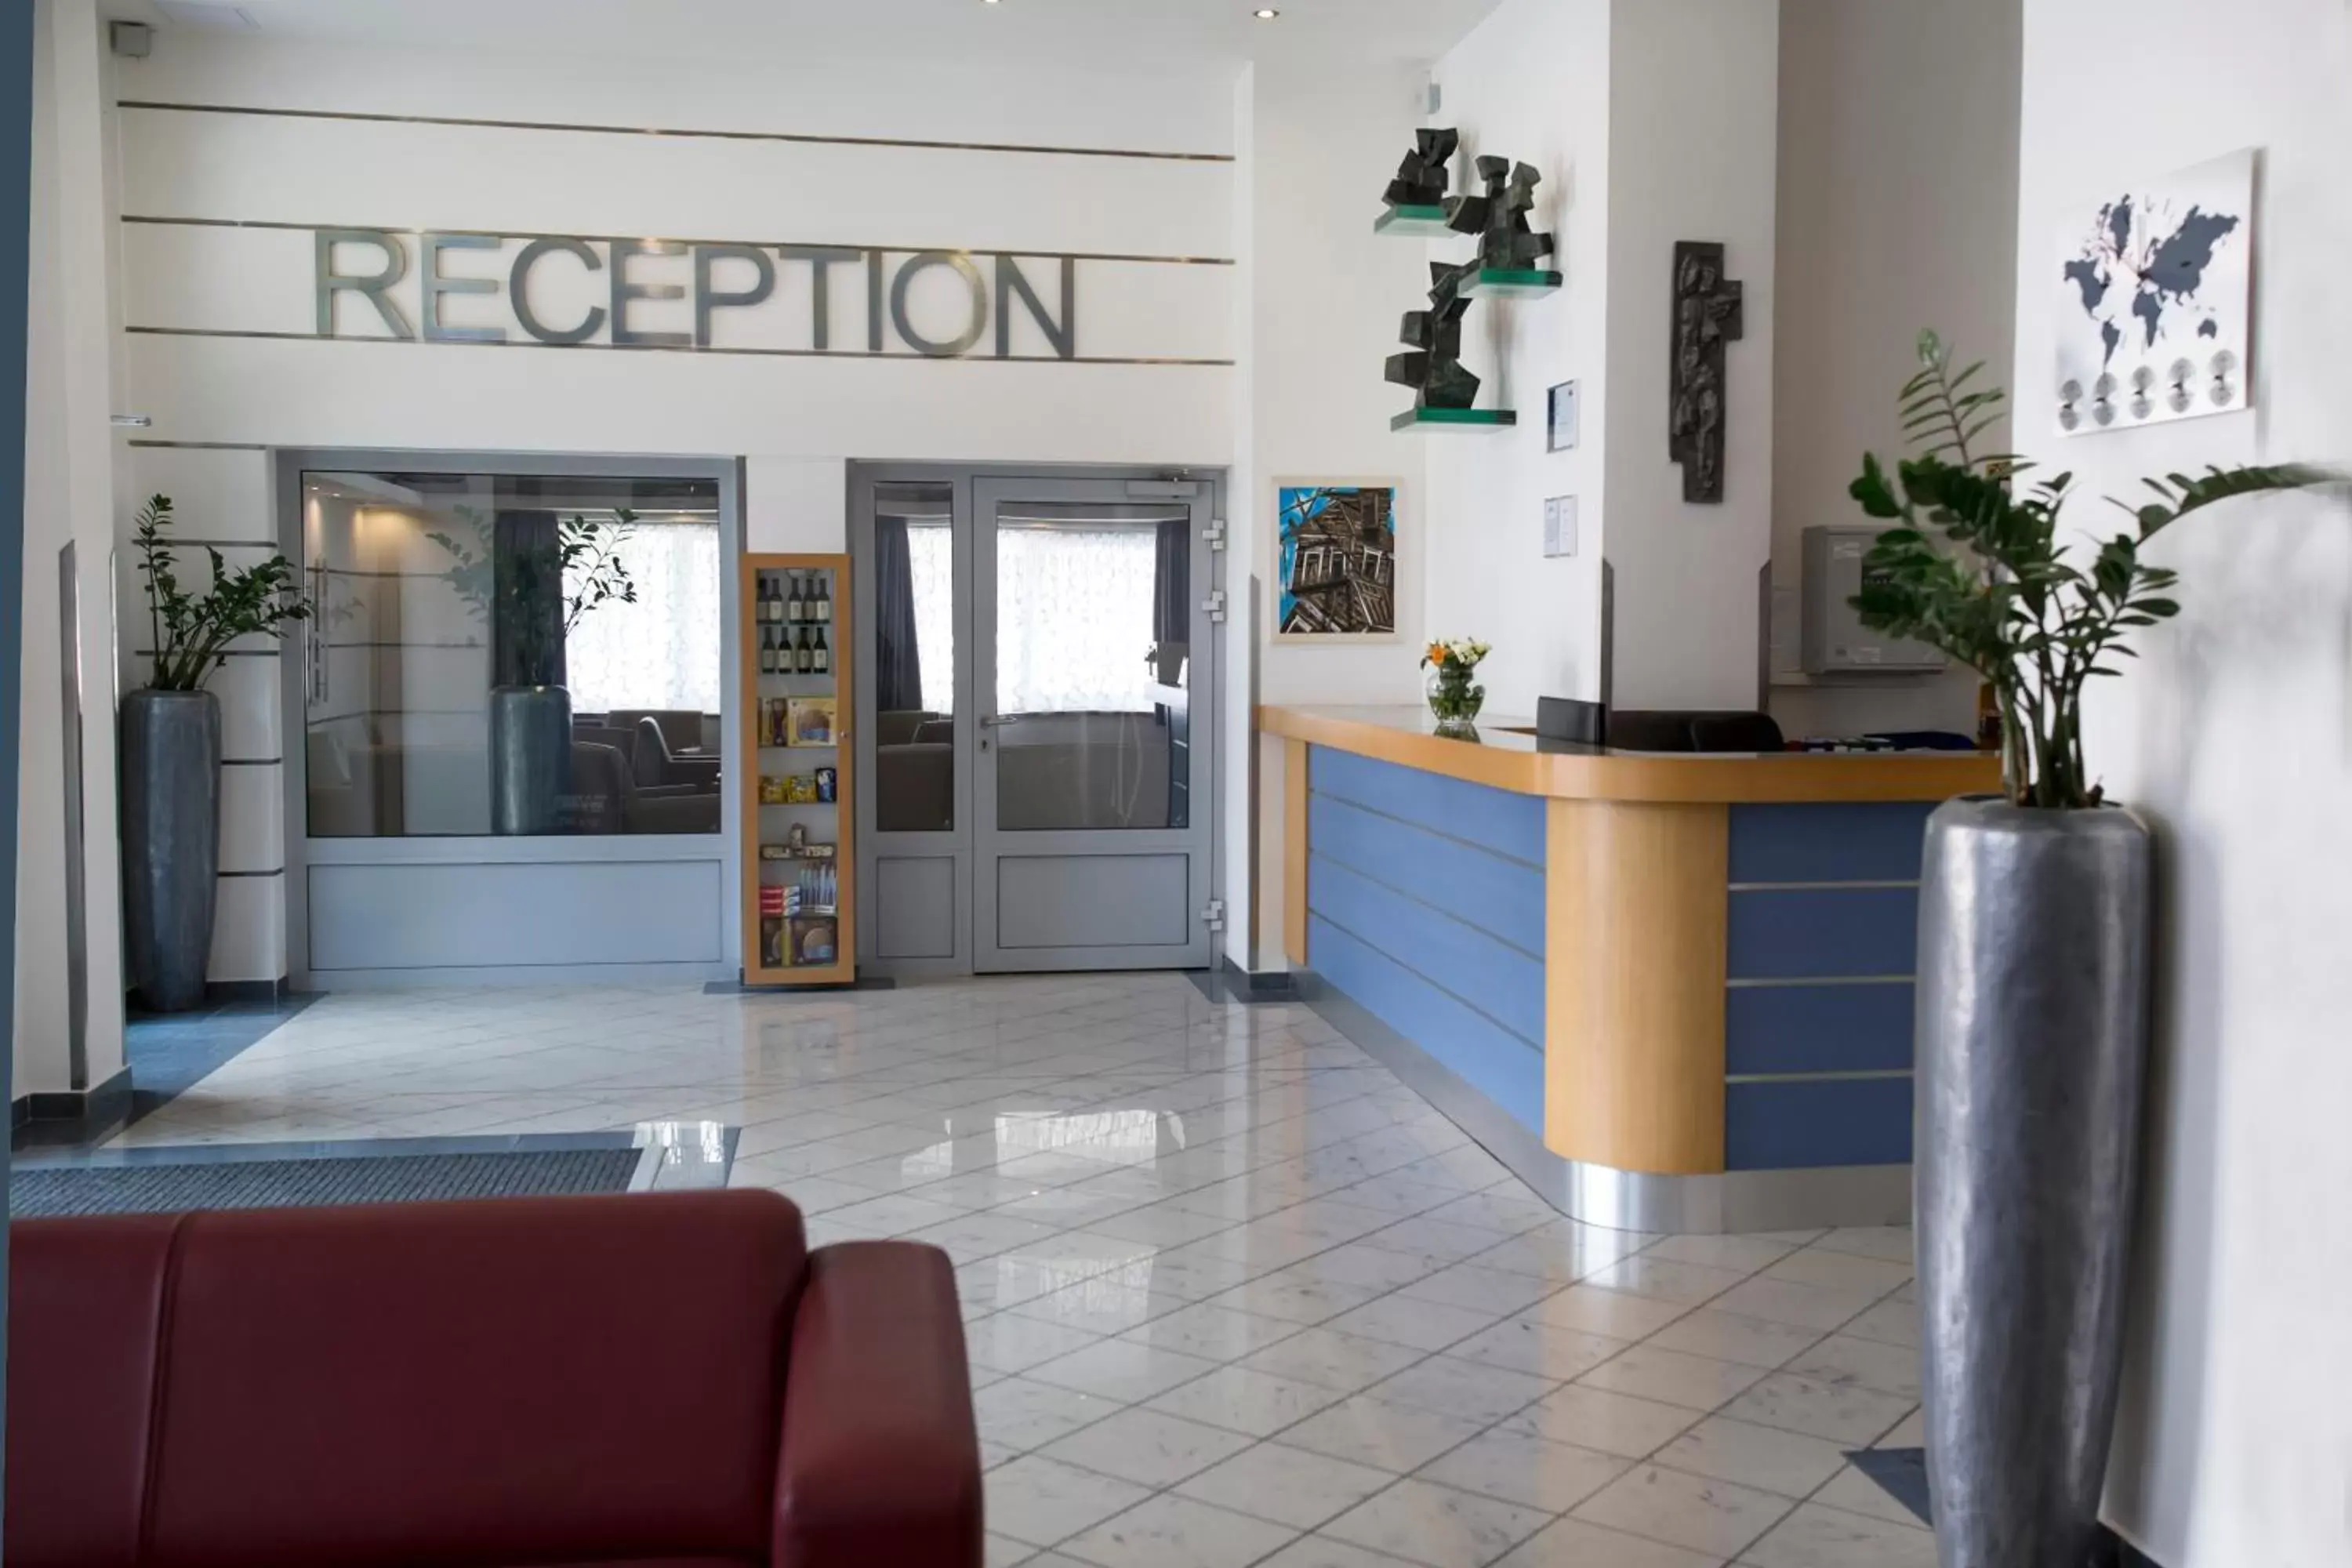 Lobby or reception in Hotel Marttel